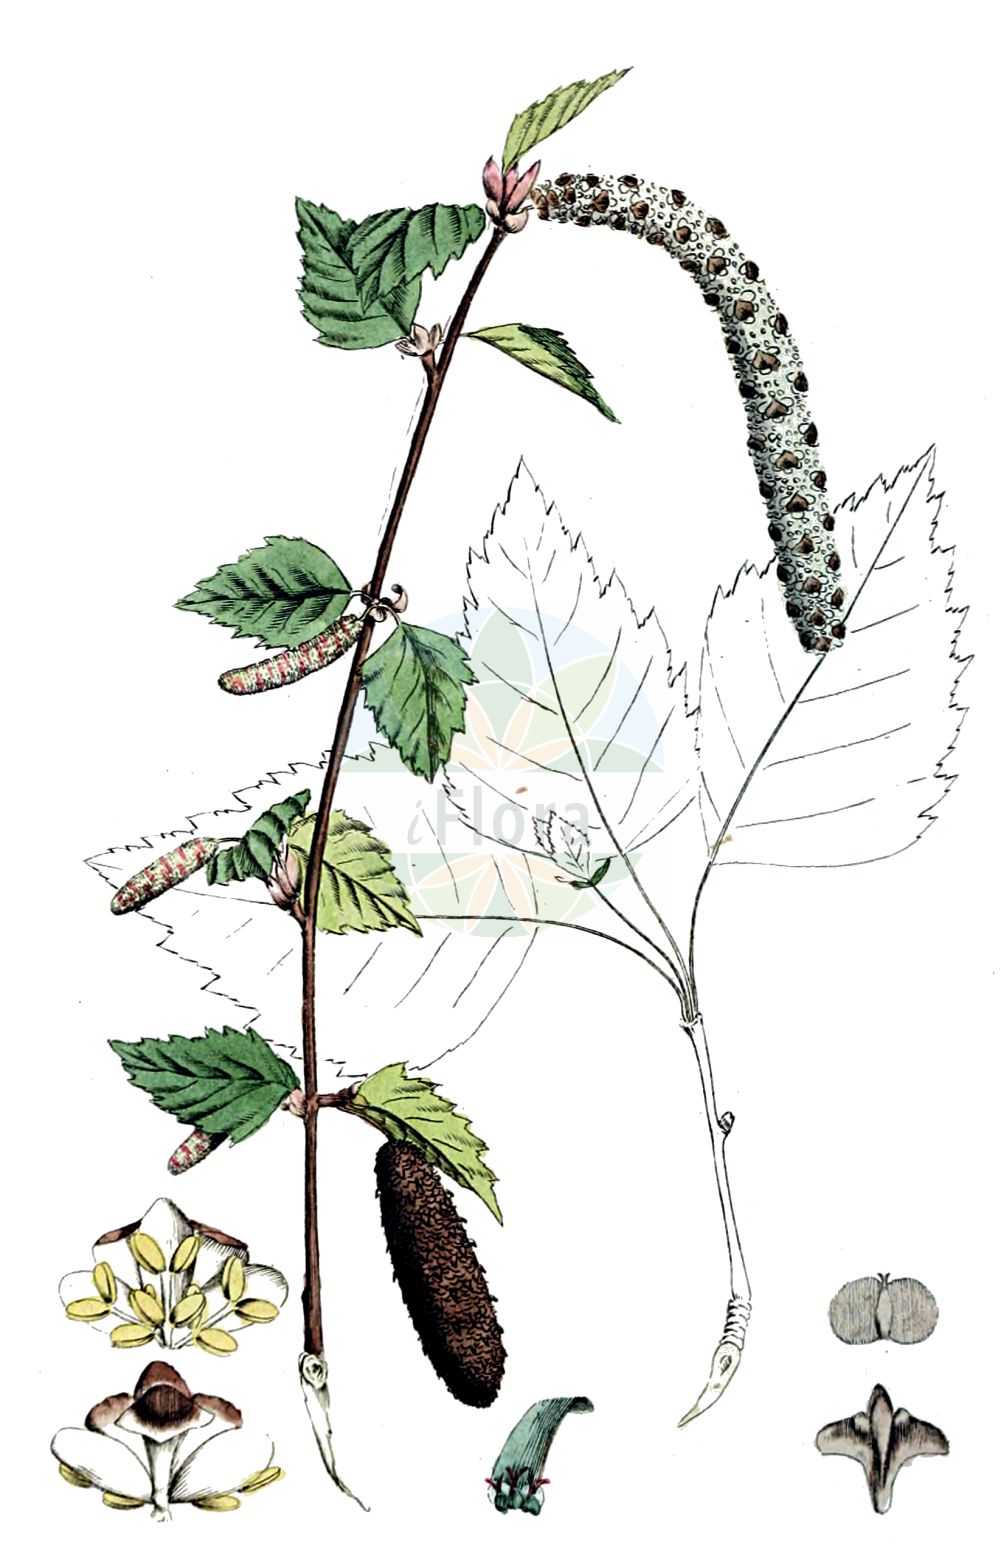 Historische Abbildung von Betula pubescens (Moor-Birke - Downy Birch). Das Bild zeigt Blatt, Bluete, Frucht und Same. ---- Historical Drawing of Betula pubescens (Moor-Birke - Downy Birch). The image is showing leaf, flower, fruit and seed.(Betula pubescens,Moor-Birke,Downy Birch,Betula pubescens,Betula pubescens var. typica,Moor-Birke,Behaarte Birke,Besen-Birke,Gewoehnliche Moor-Birke,Downy Birch,Pubescent Birch,Swamp Birch,White Birch,Betula,Birke,Birch,Betulaceae,Birkengewächse,Birch family,Blatt,Bluete,Frucht,Same,leaf,flower,fruit,seed,Svensk Botanik (Svensk Botanik))